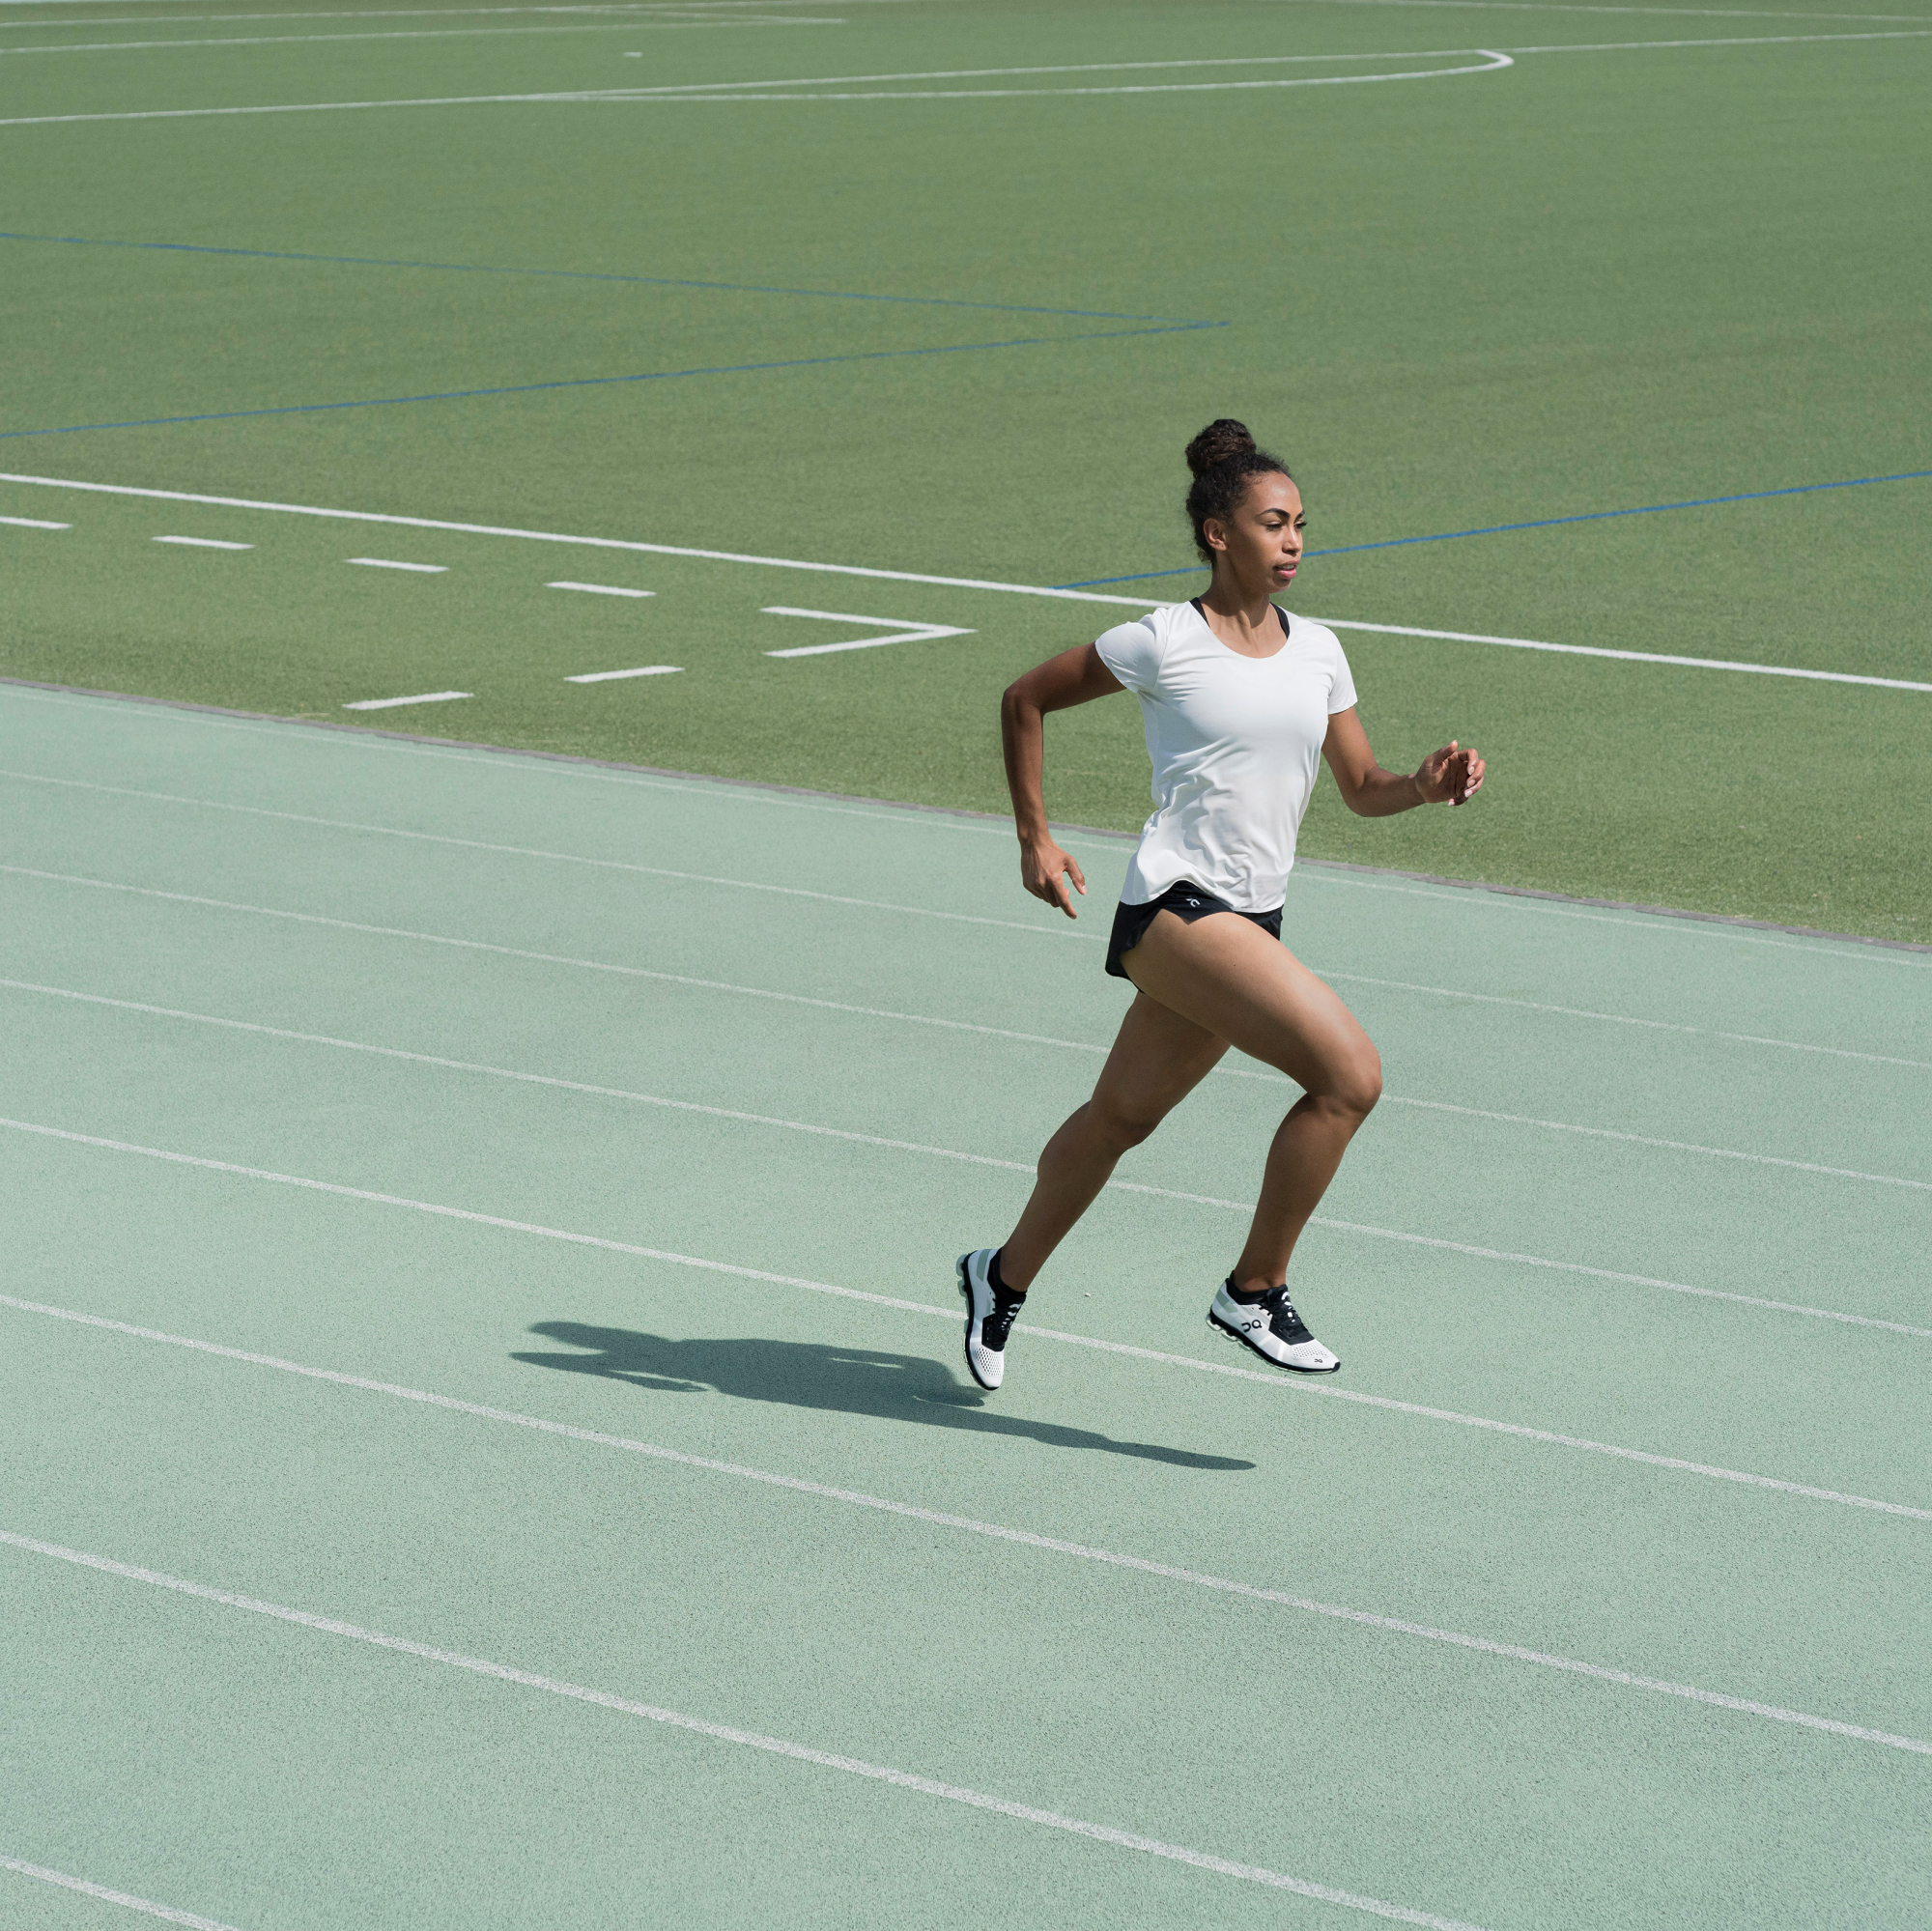 Eine Frau rennt auf einer grünen Laufbahn mit einem Fussballfeld im Hintergrund